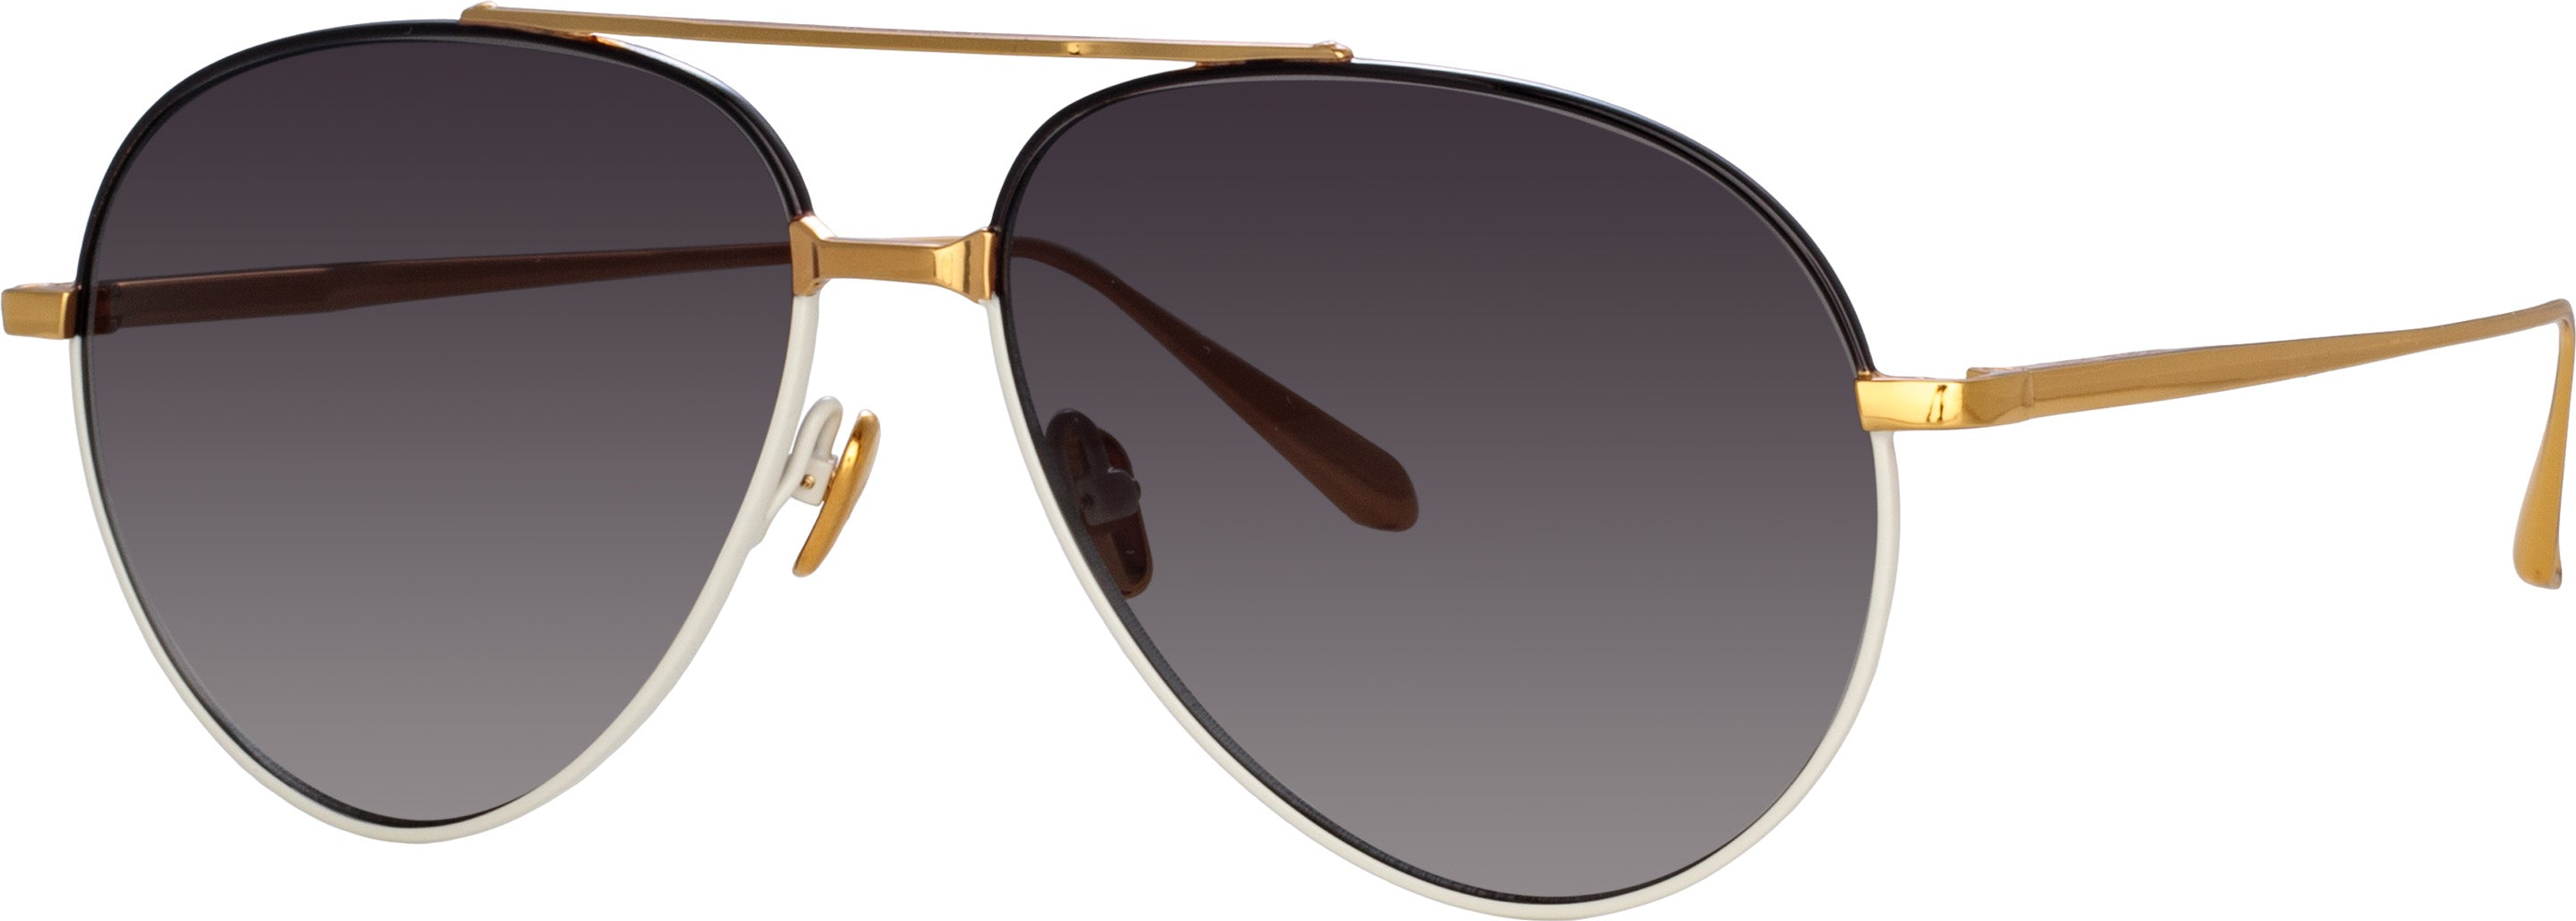 Color_LFL1421C3SUN - Marcelo Aviator Sunglasses in Black and Cream